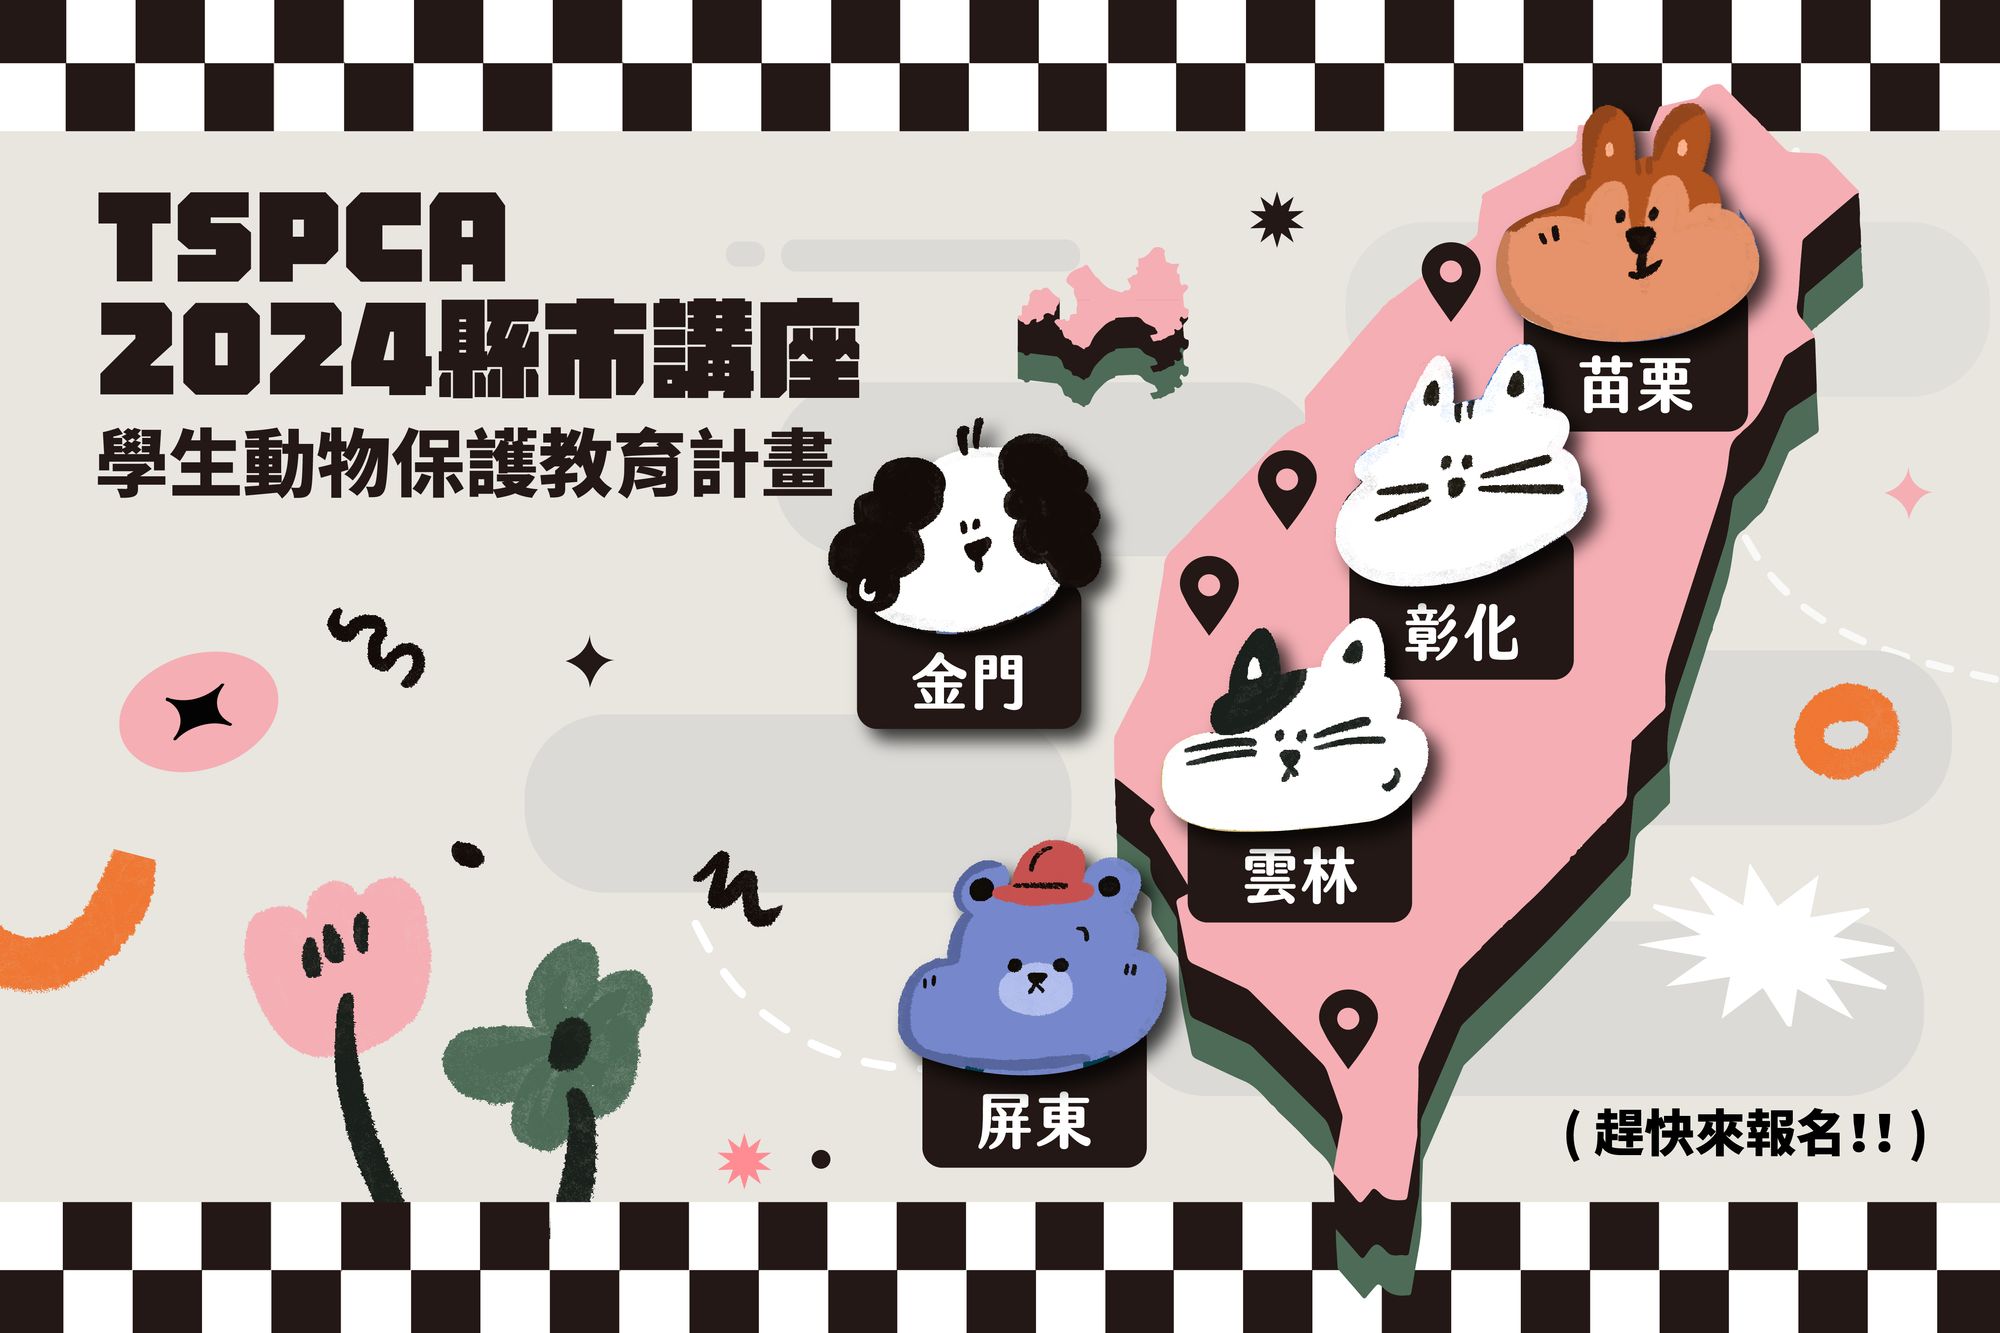 【Taiwan SPCA 2024「學生」動物保護教育計畫】 苗栗、彰化、雲林、屏東、金門五縣市 熱烈報名中！